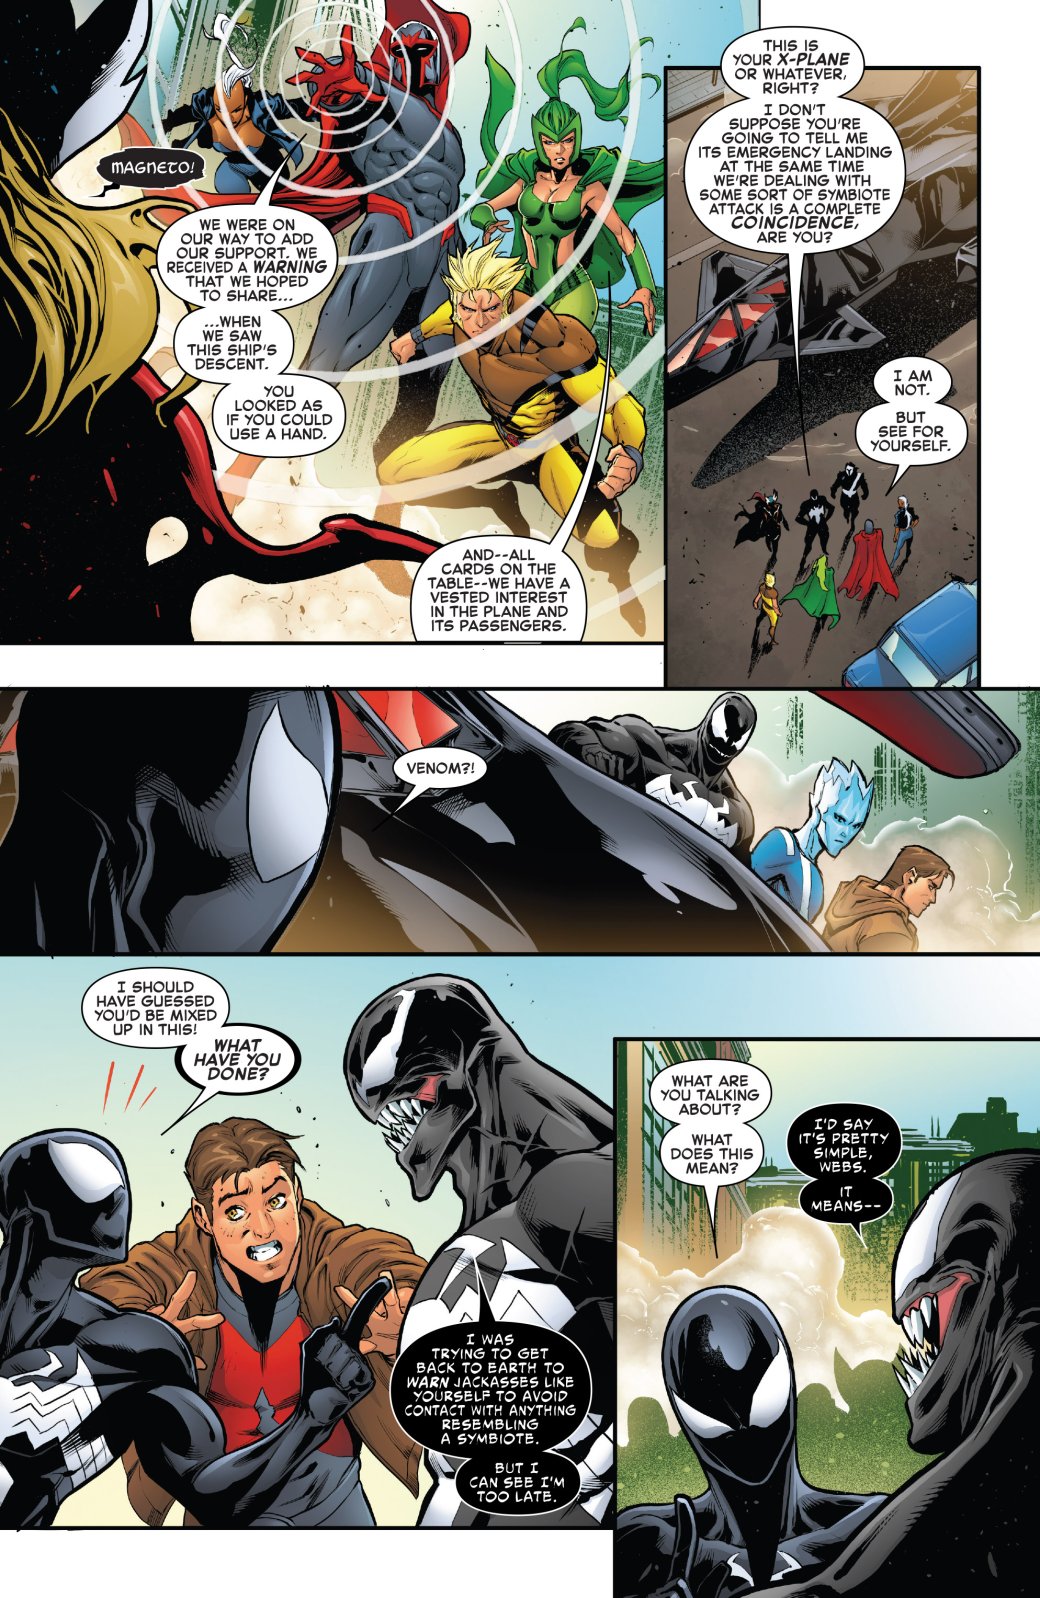 Галерея Venomized: почему десятки супергероев Marvel получили симбиотов? - 1 фото